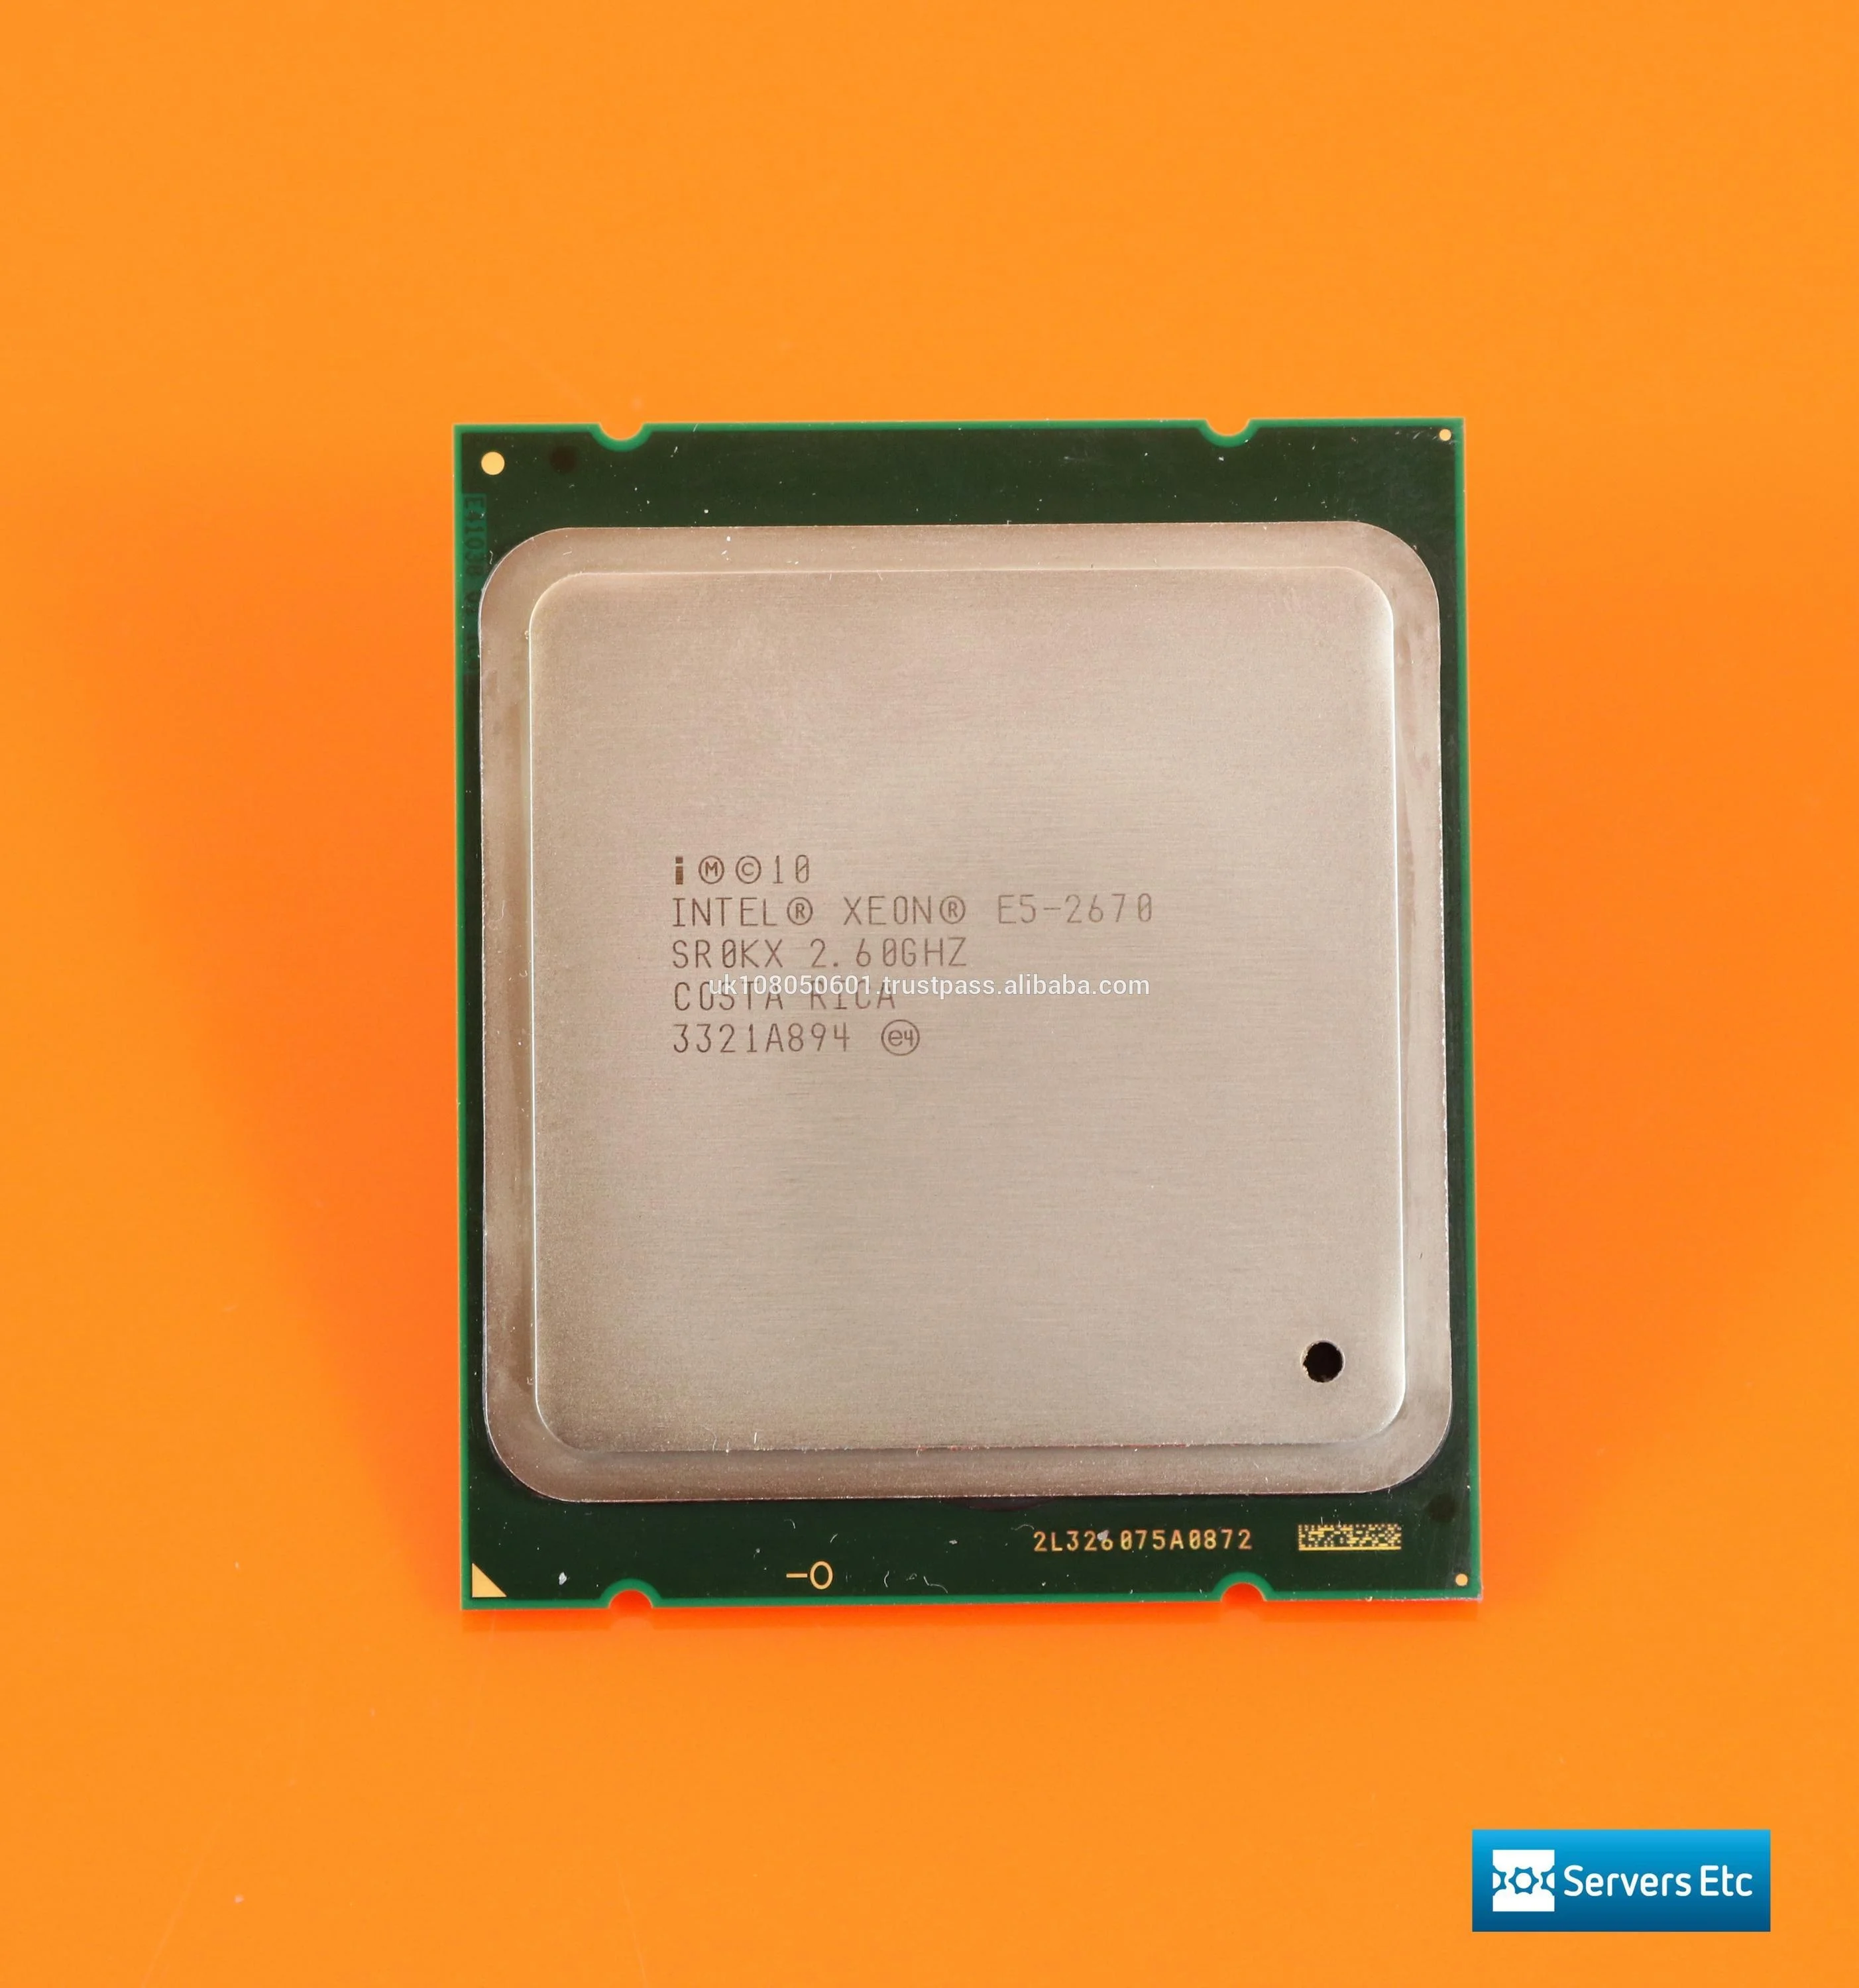 Интел 2670. Процессор Intel Xeon e5-2667v2. Intel Xeon e5 2667 v2. Процессор Intel Xeon e5-2683v4. Intel Xeon CPU e5-2670 0 @ 2.60GHZ.